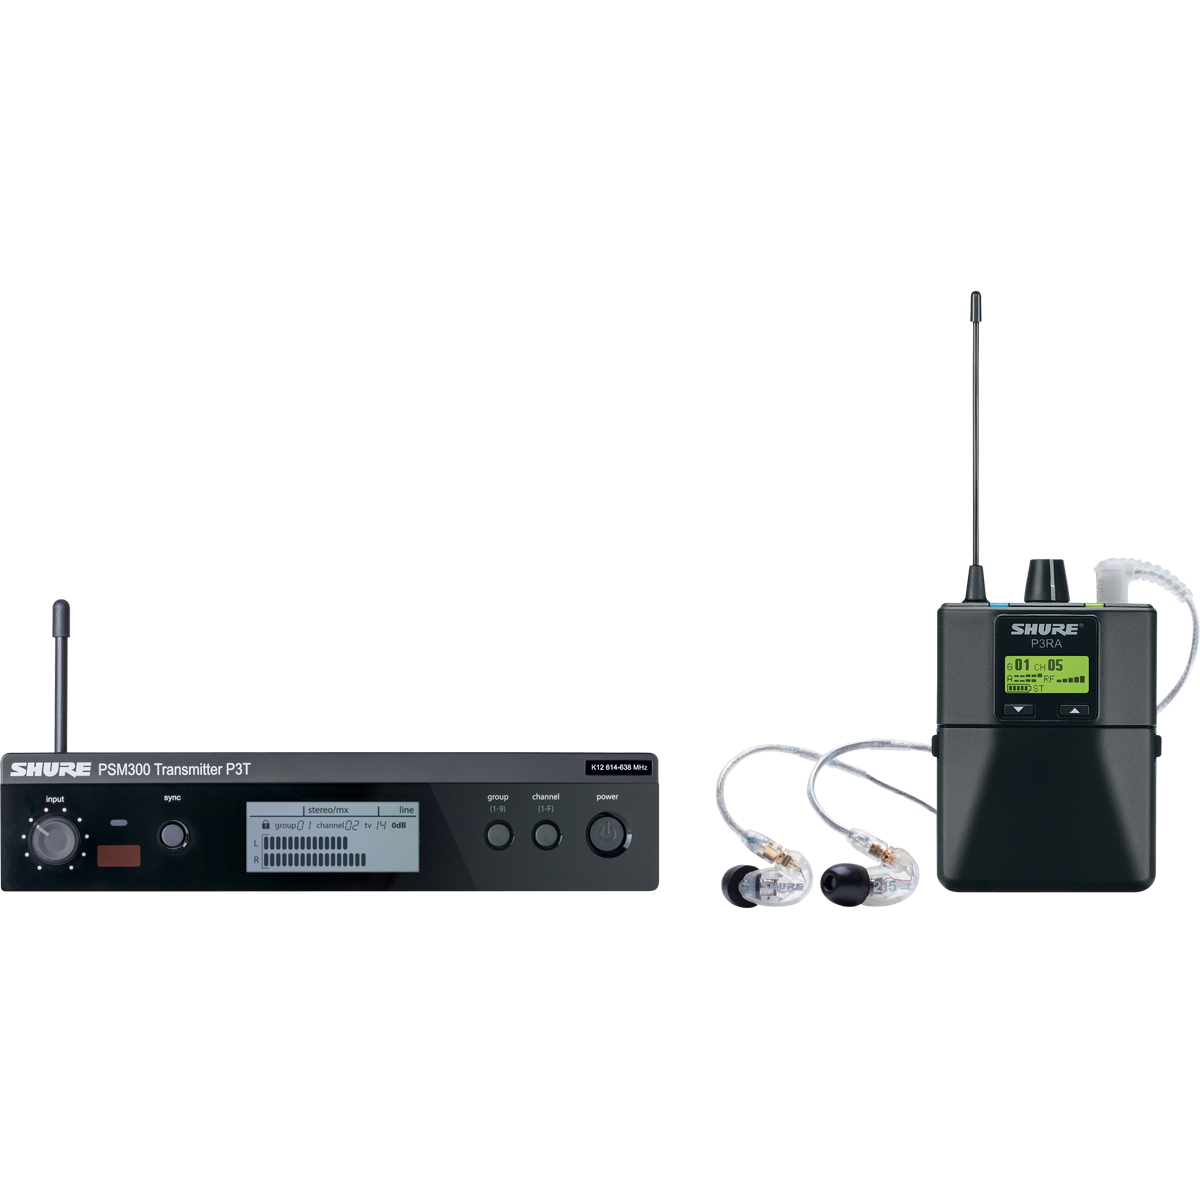 Ear monitors - Shure - PSM300 P3TERA215CL avec...